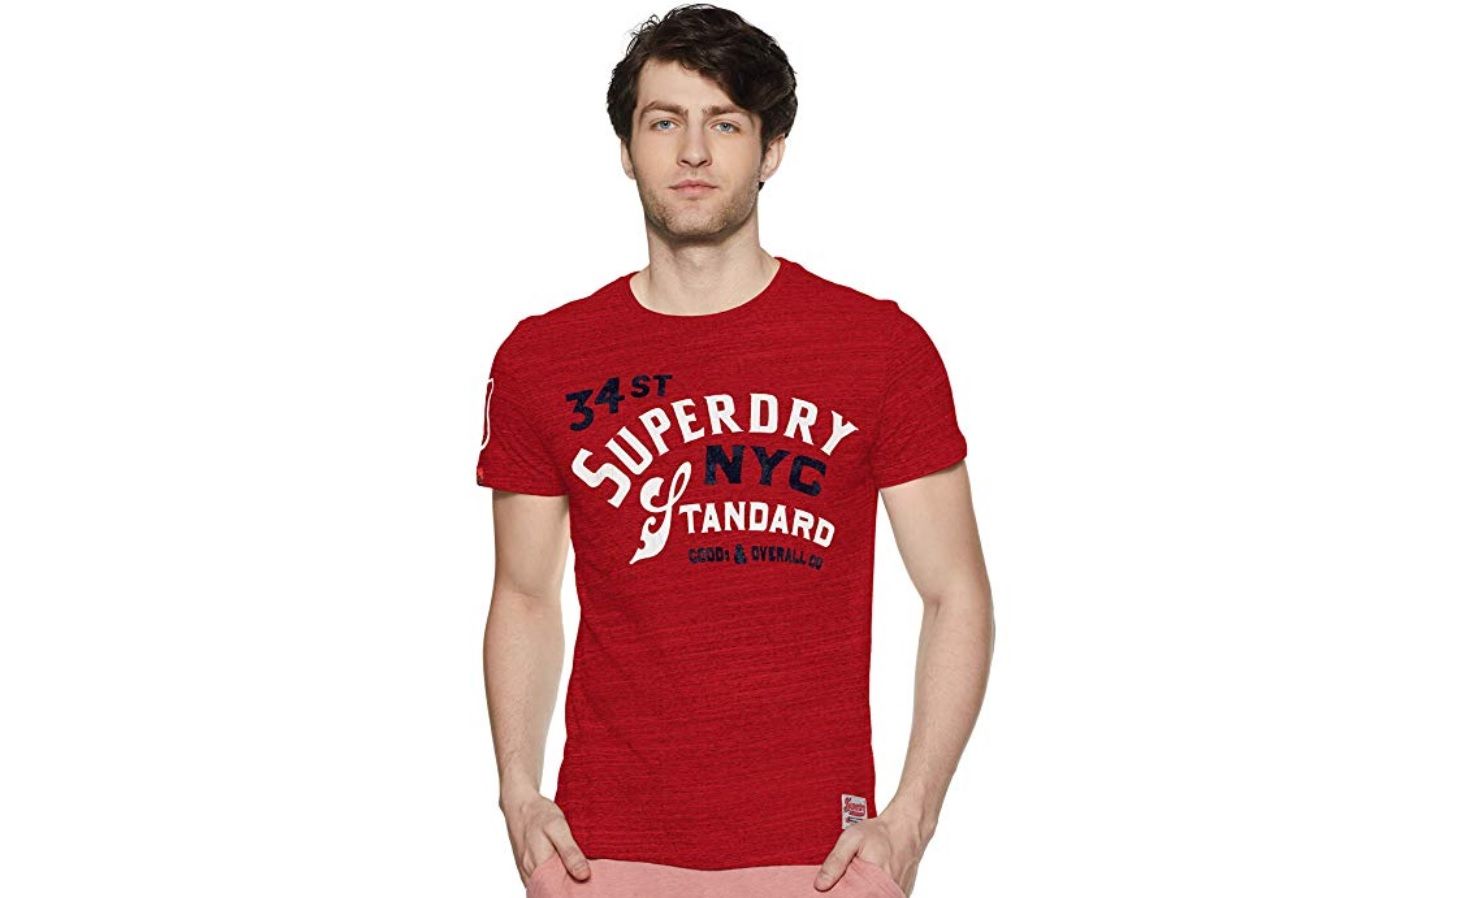 ¡Chollo! Camiseta Superdry 34th St Tee desde sólo 10,68€ (antes 21,85€)